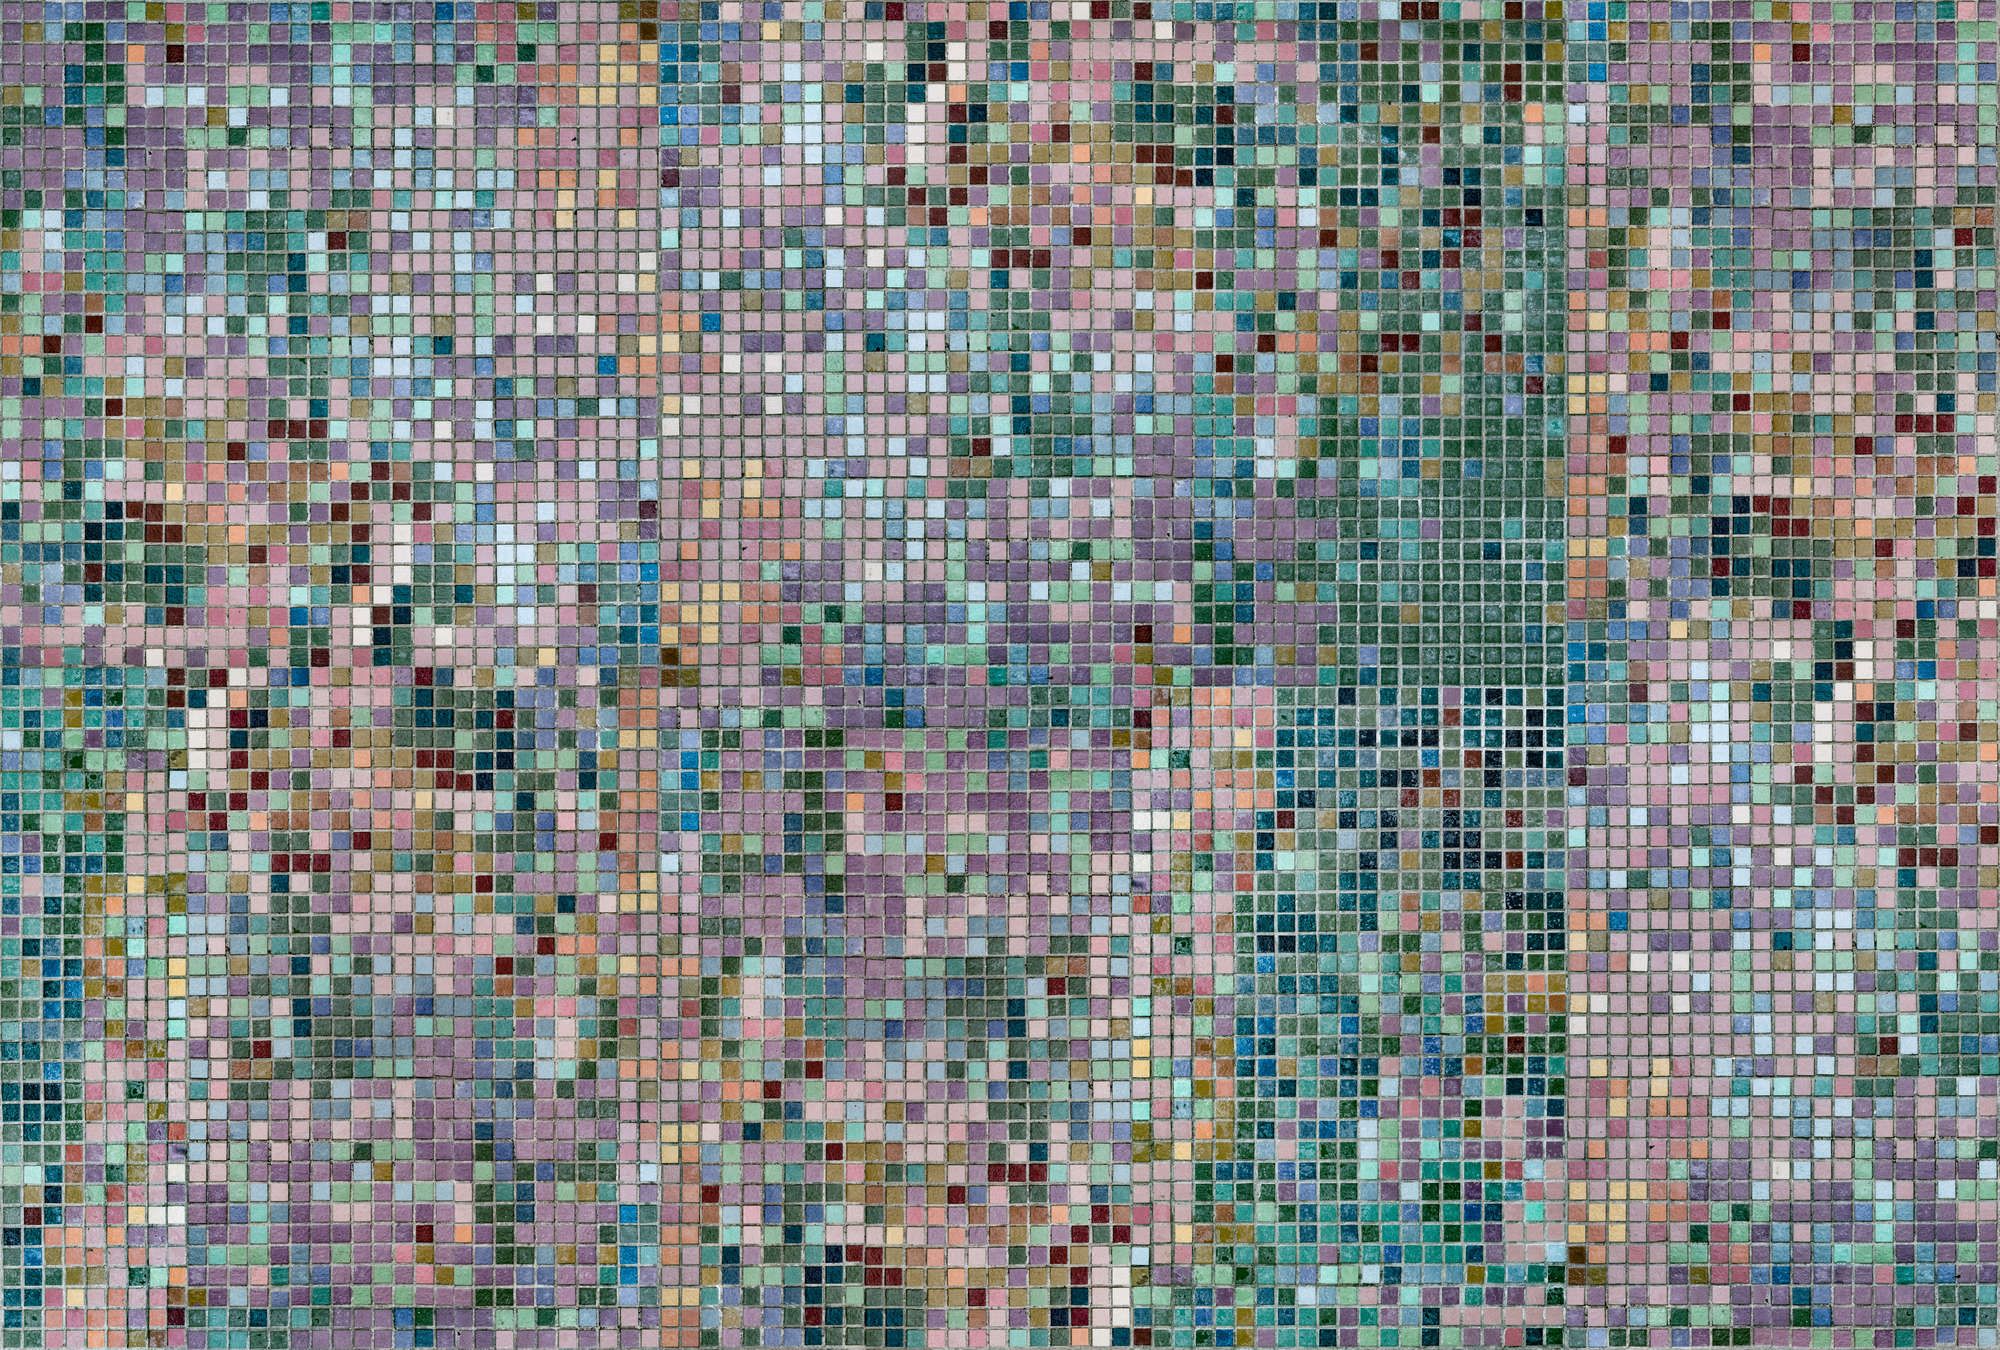             Fototapete »grand central« - Mosaikmuster in bunten Farben – Glattes, leicht perlmutt-schimmerndes Vlies
        